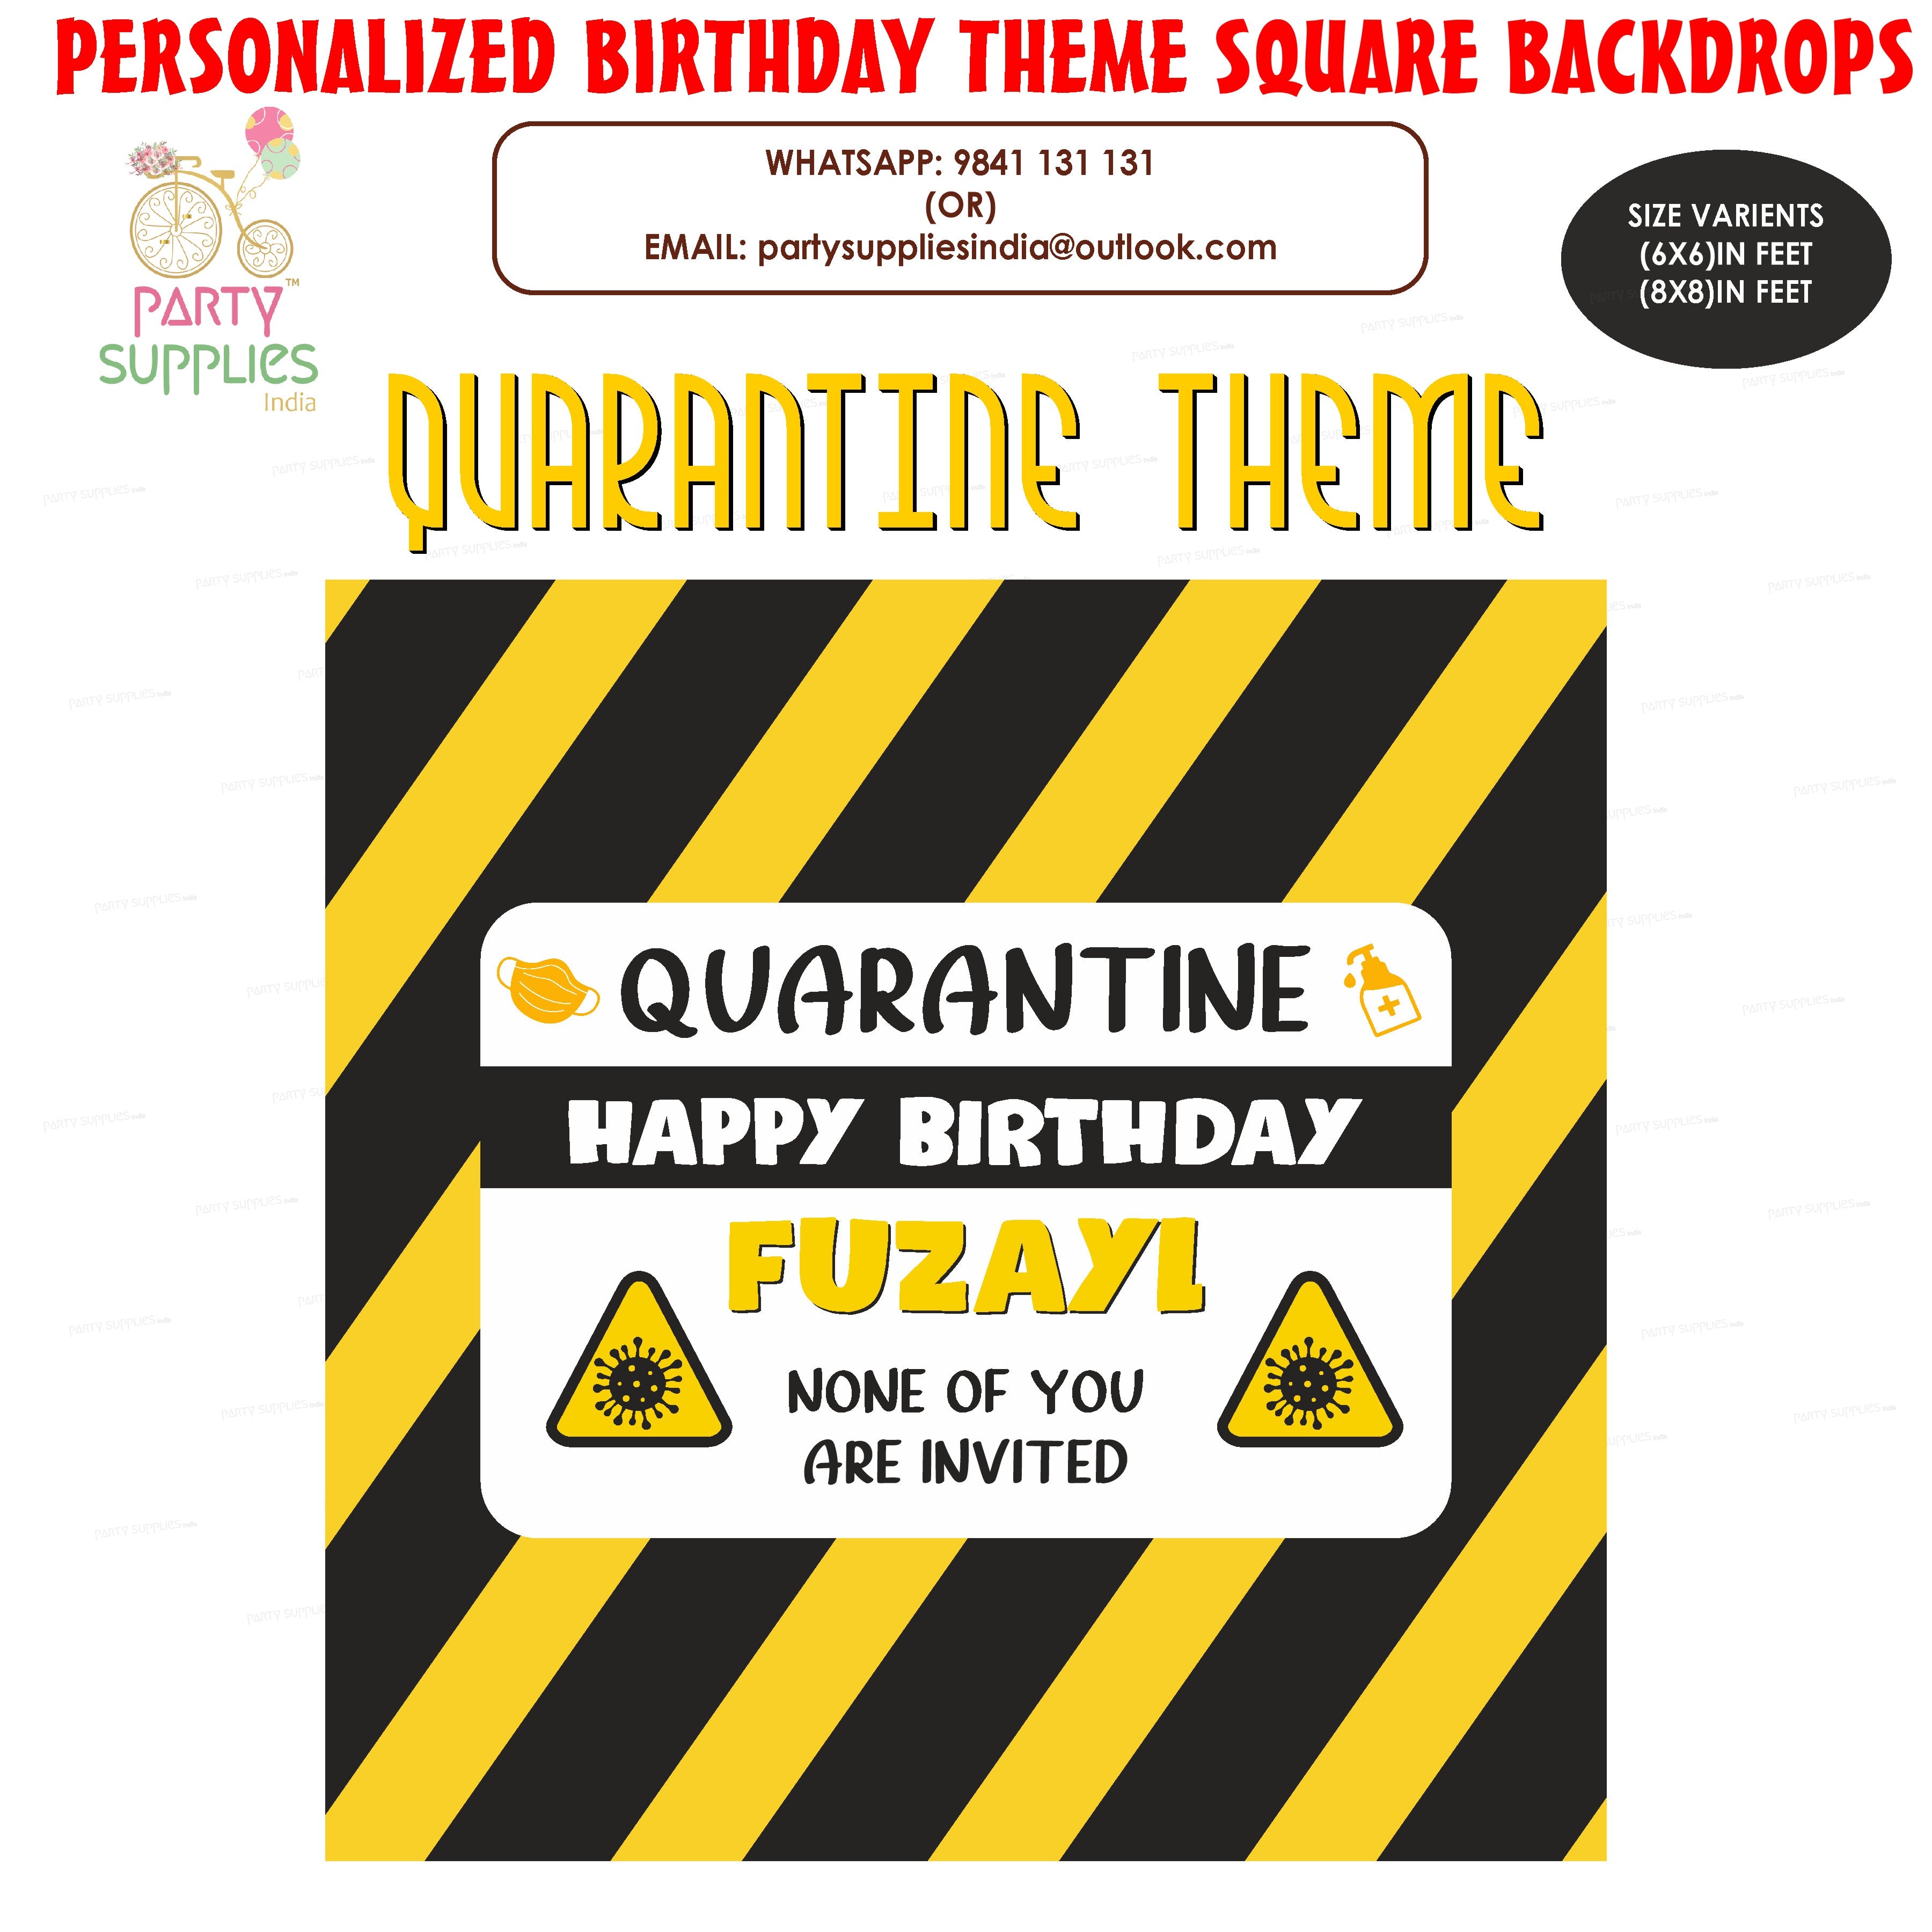 PSI Quarantine Theme Customized Square Backdrop